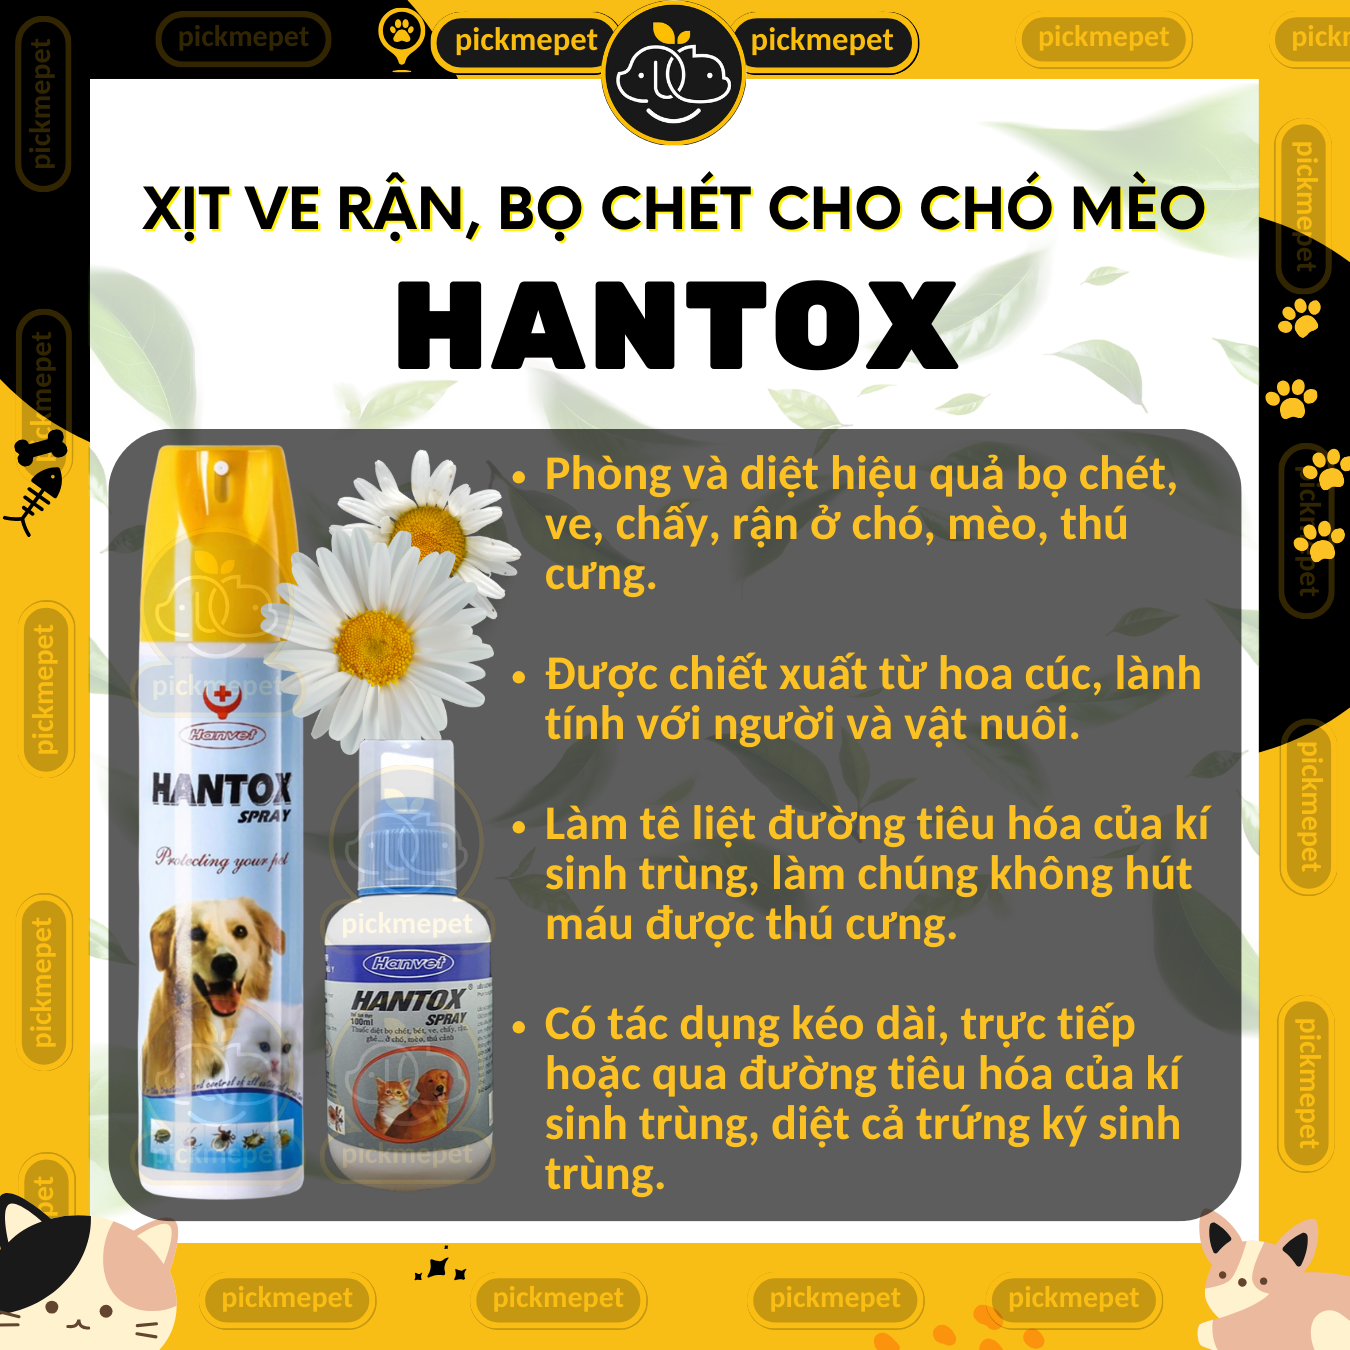 Hantox Spray - Xịt Ve Rận, Bò Chét, Ghẻ Cho CHÓ MÈO 100ml 300ml